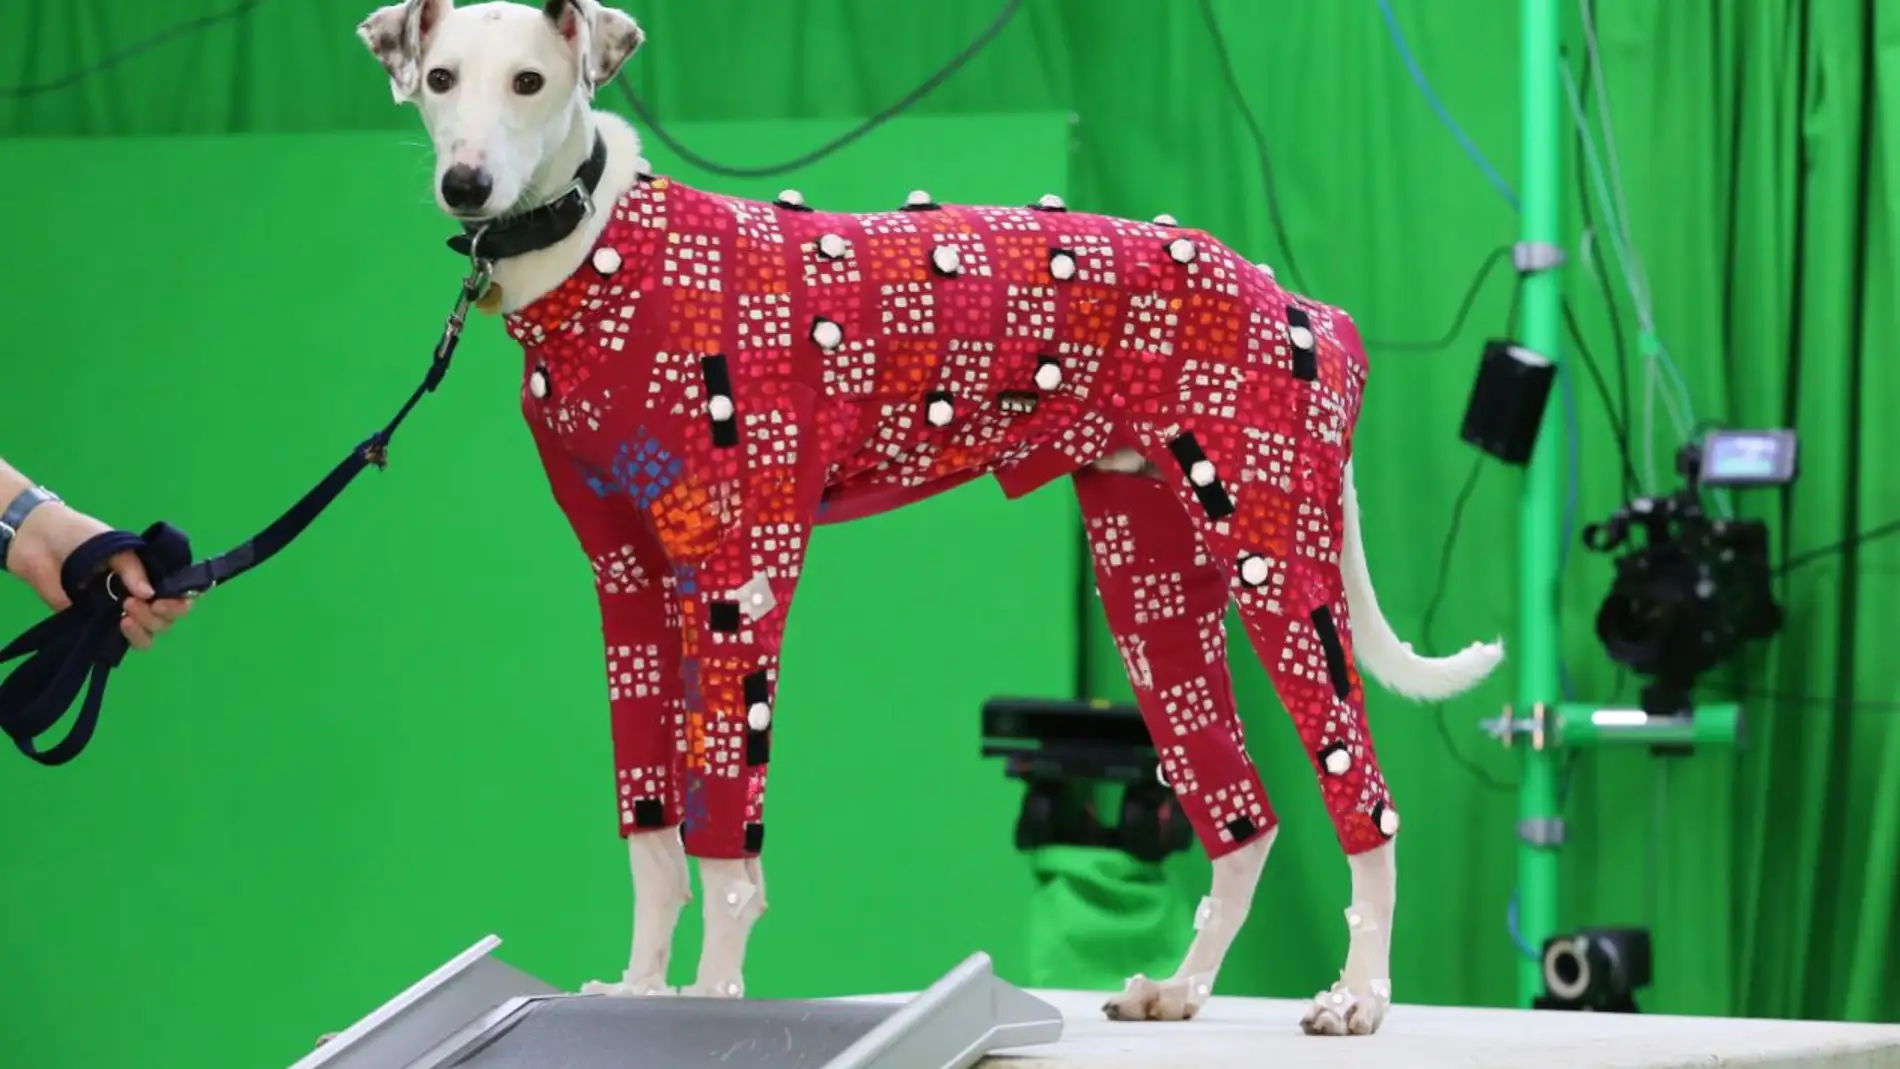 Perros en busca de hogar se convierten en modelos de peliculas de animacion